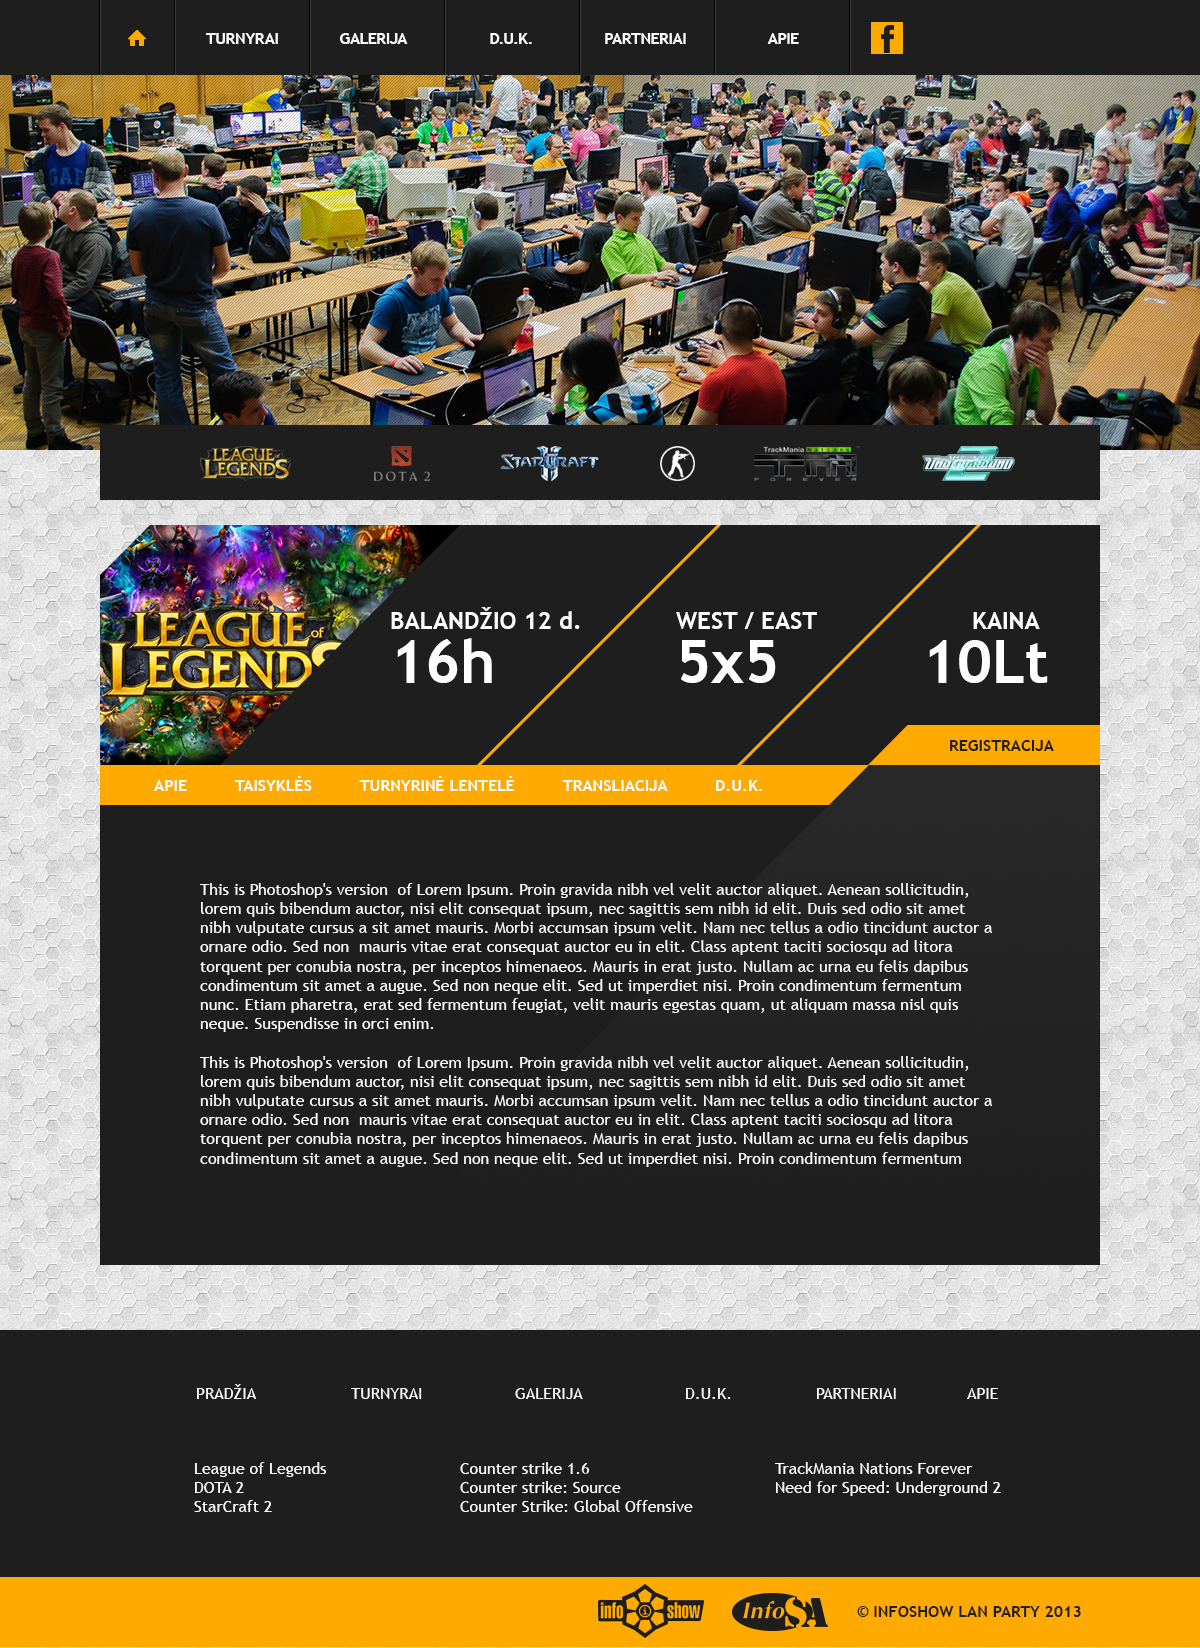 lanparty party Infoshow LAN Games Gaming esports